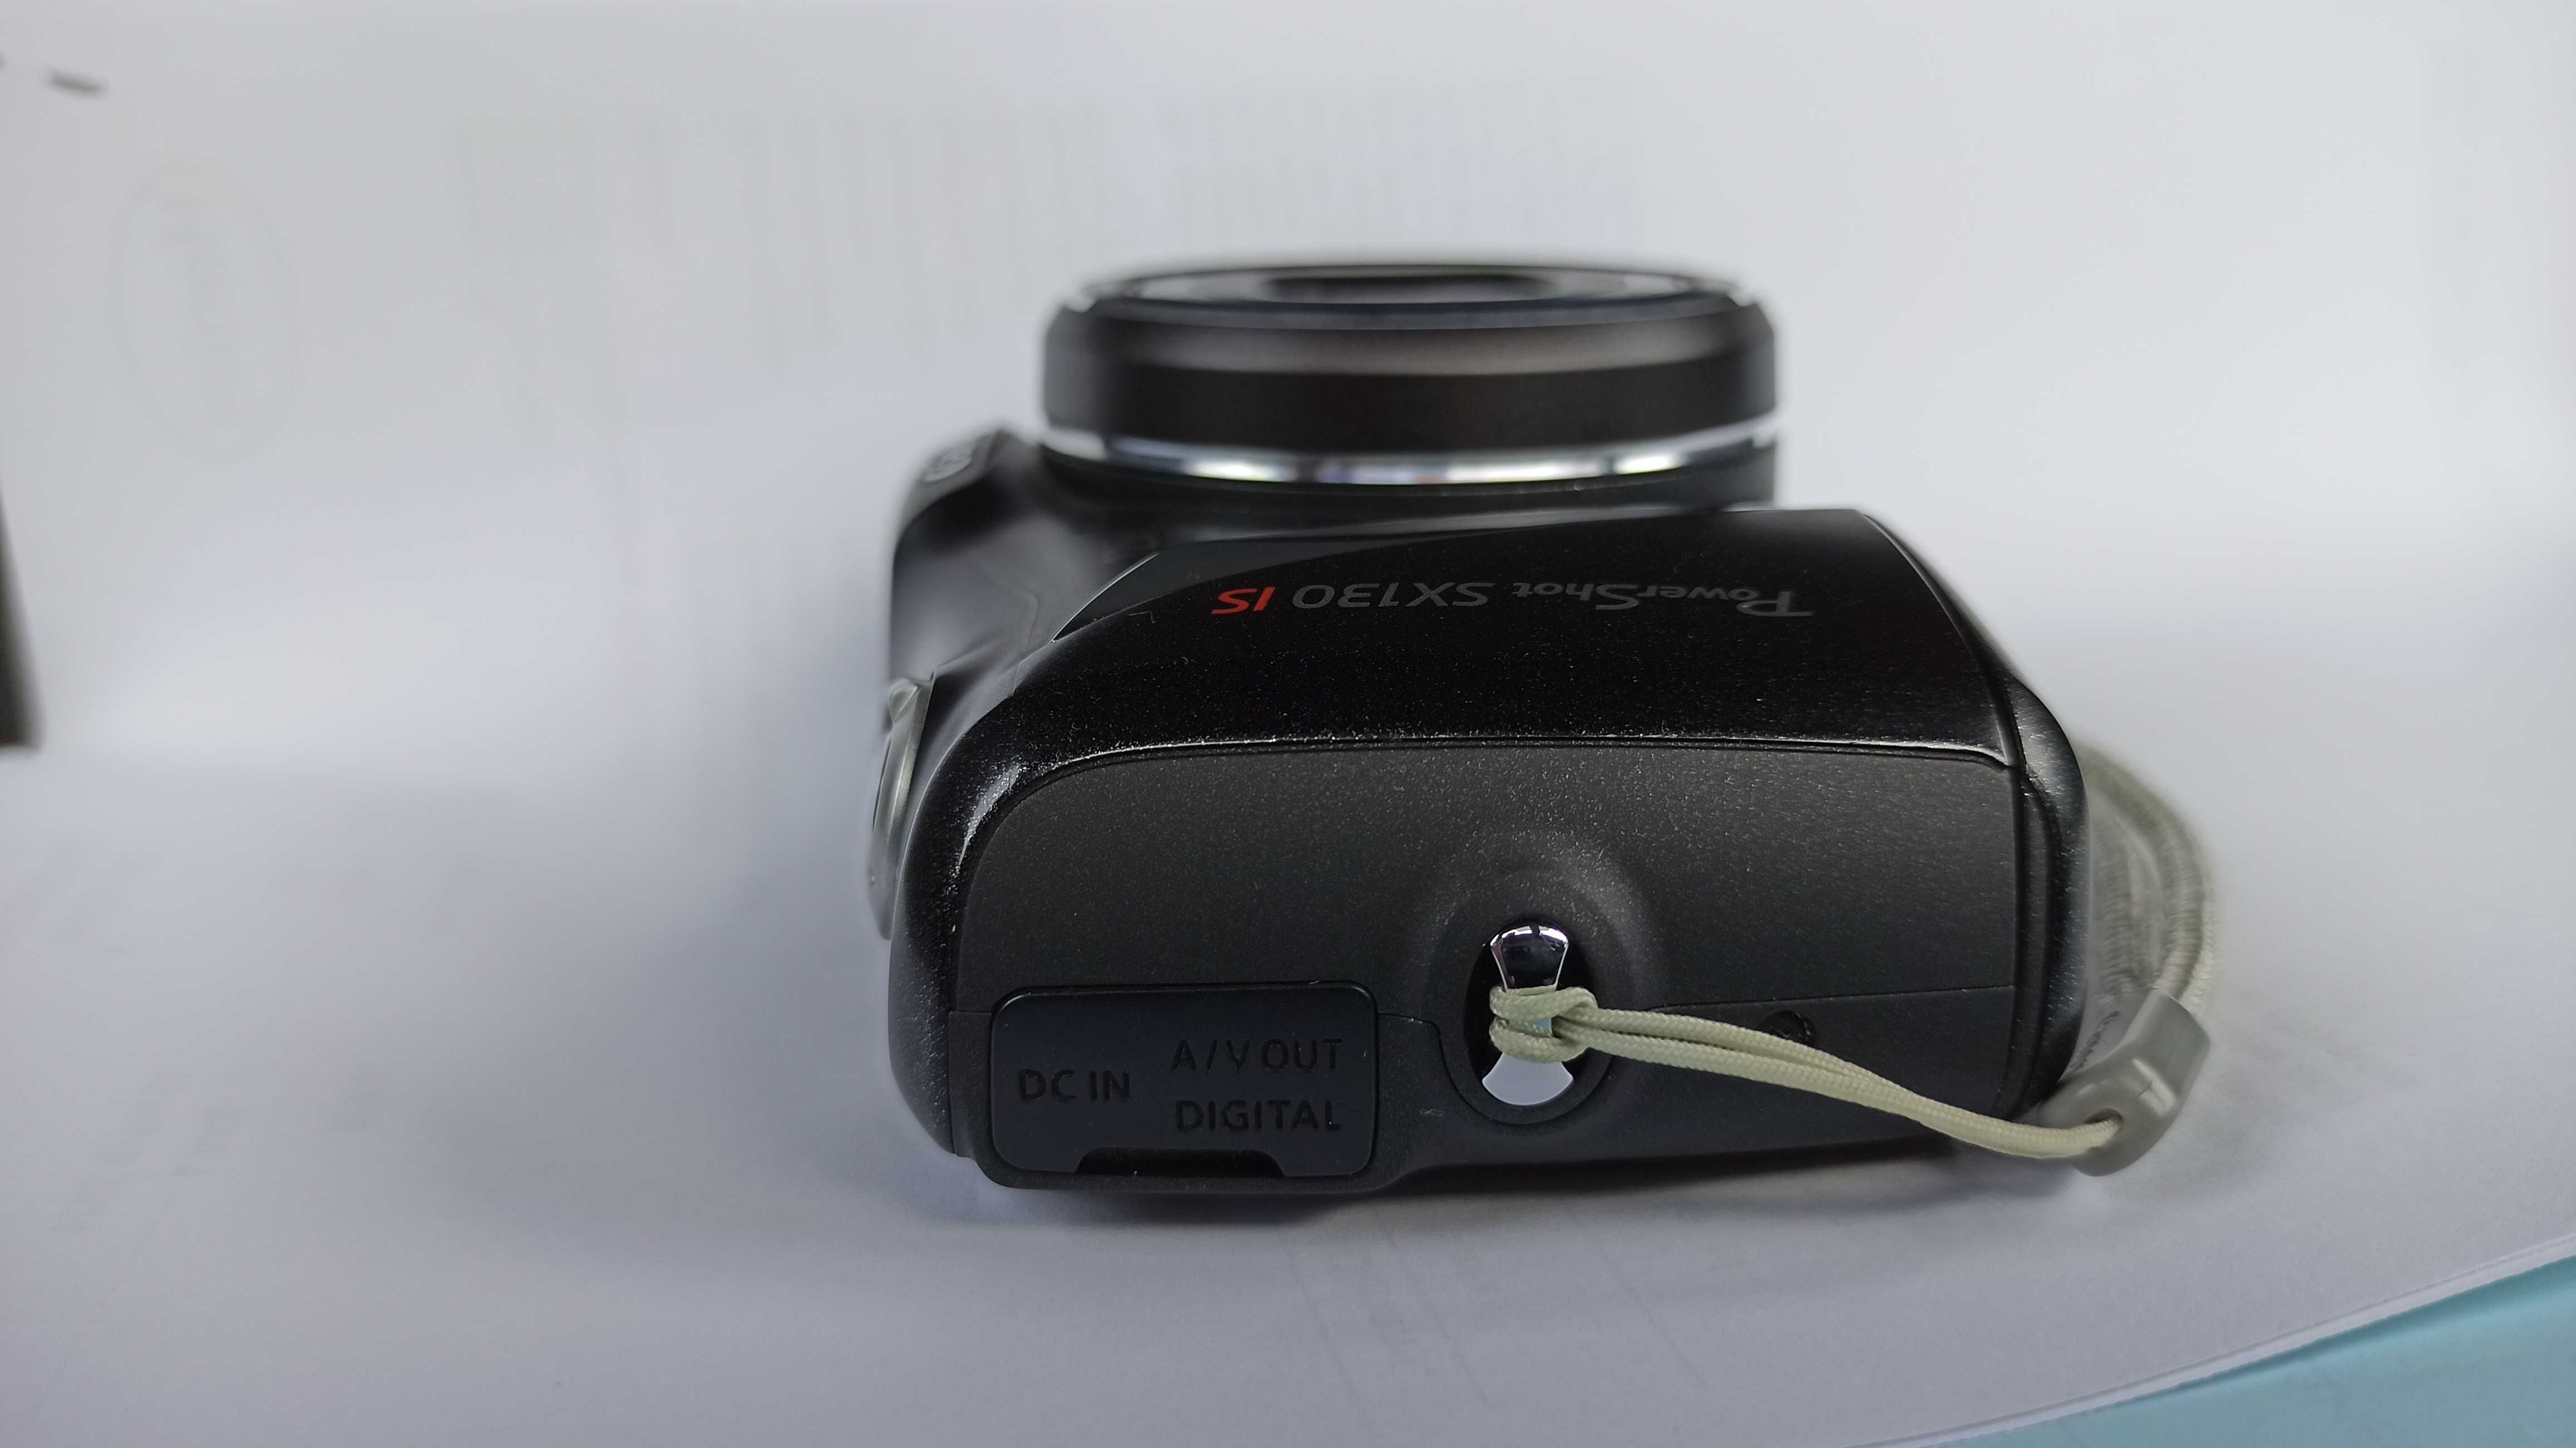 Продавам дигитален фотоапарат ,,Canon Powershot SX130IS''